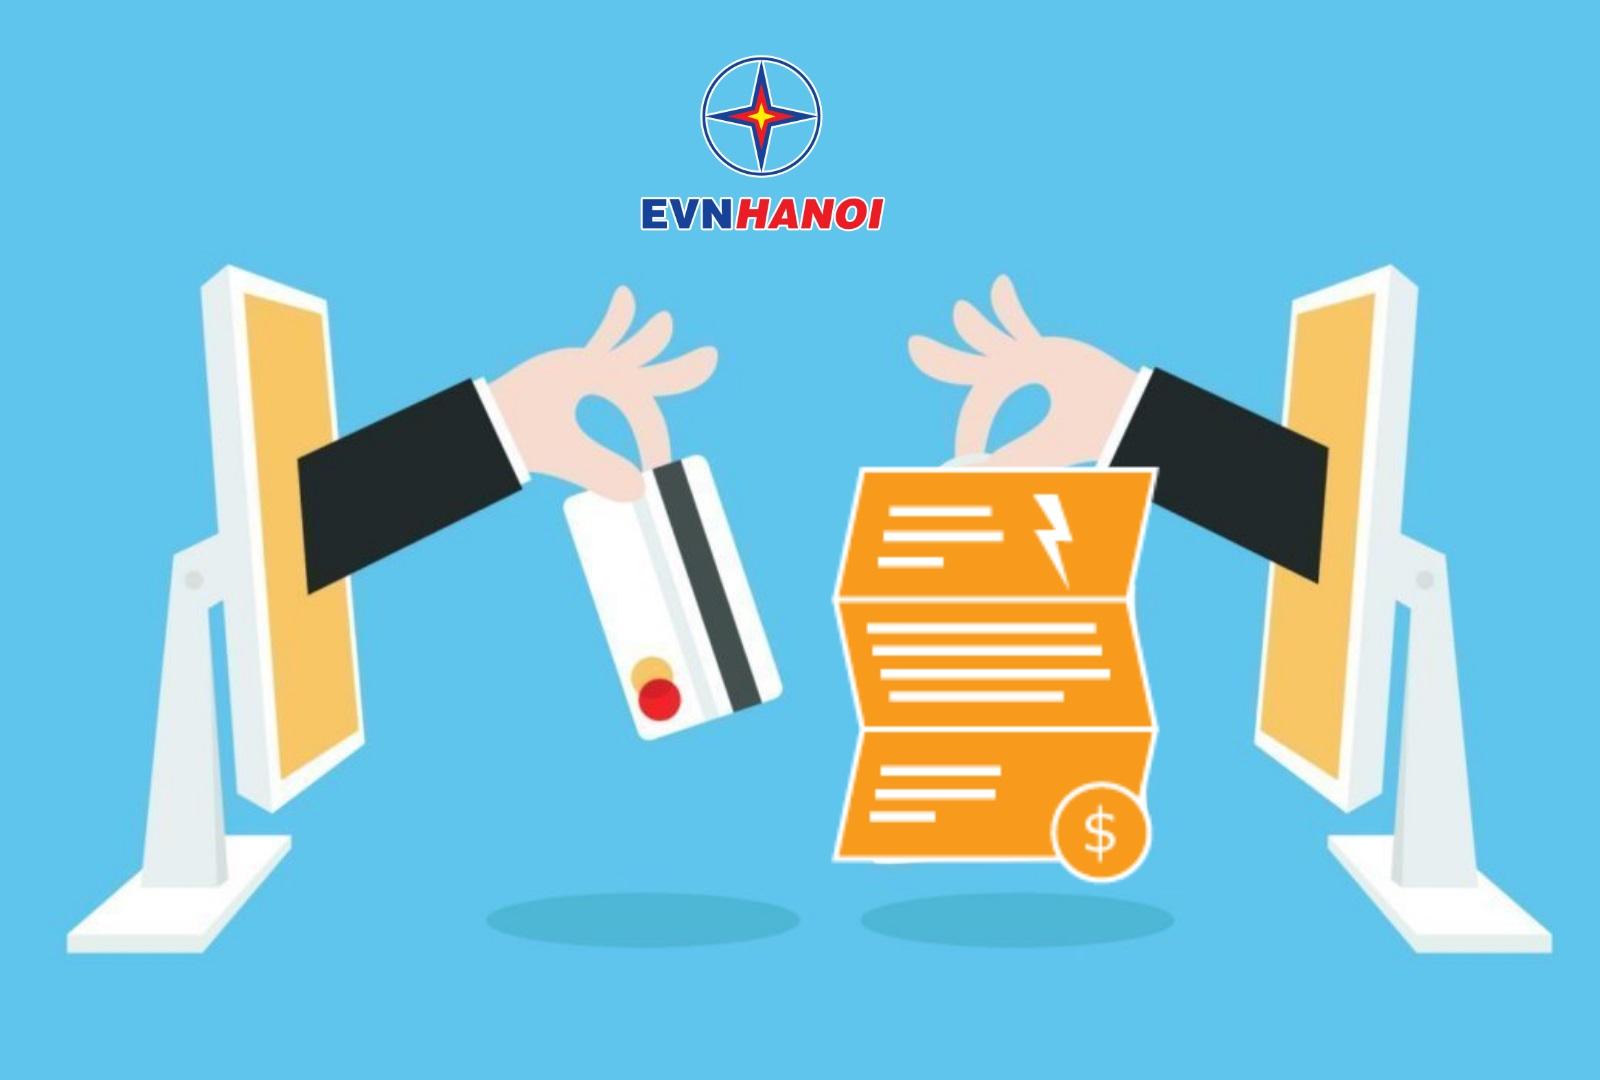 EVNHANOI triển khai ký lại hợp đồng mua bán điện sinh hoạt theo phương thức điện tử